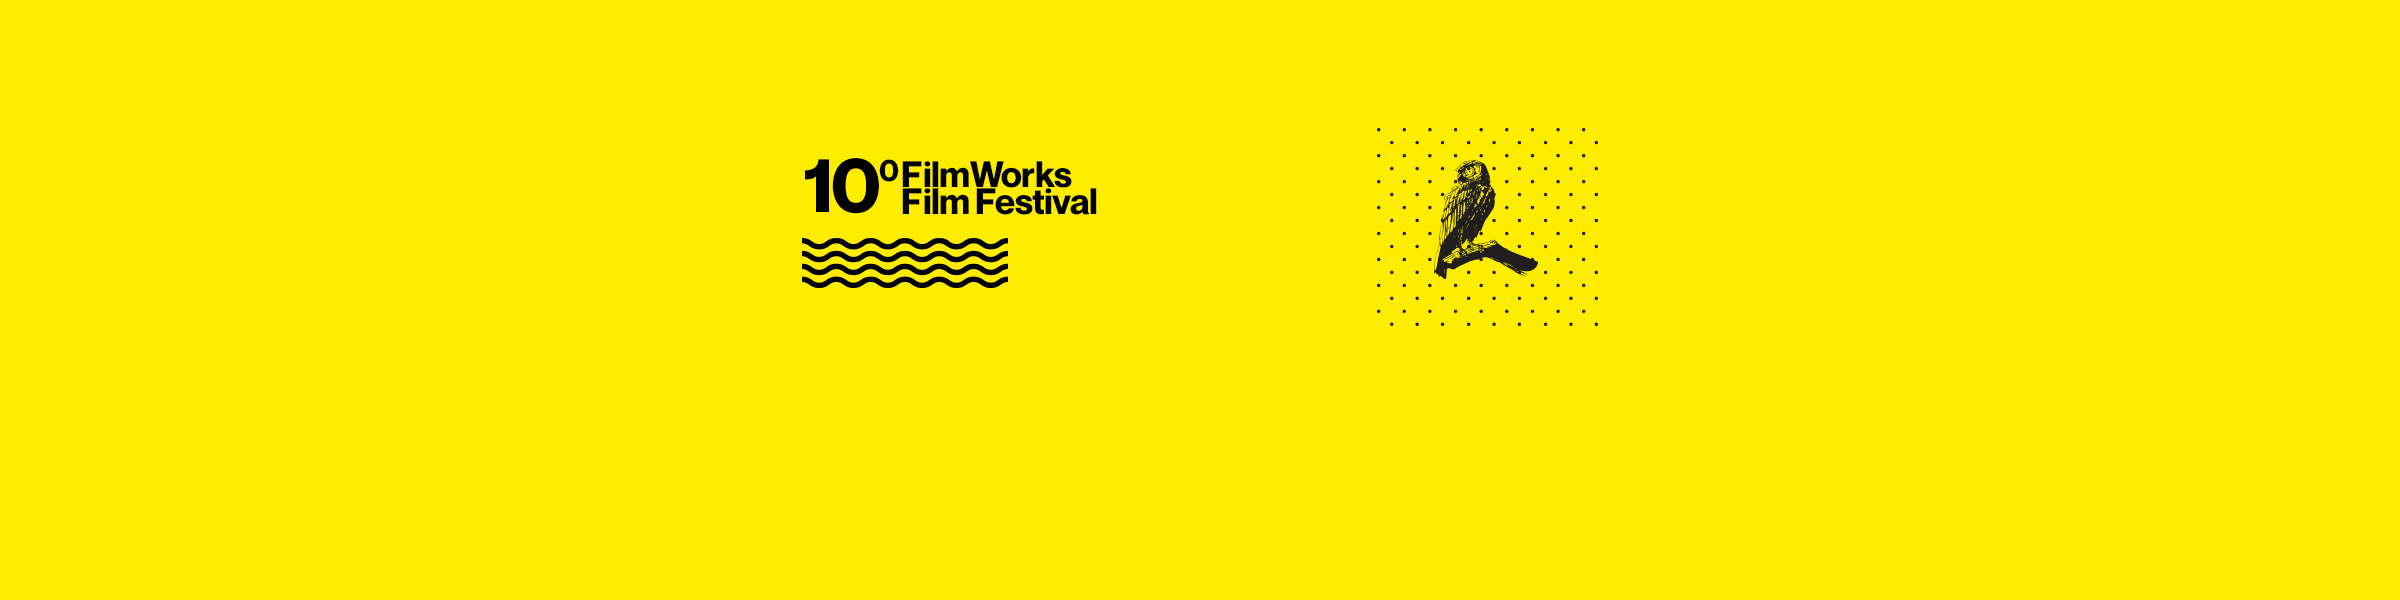 Inscrições para a 10ª edição do Filmworks Film Festival